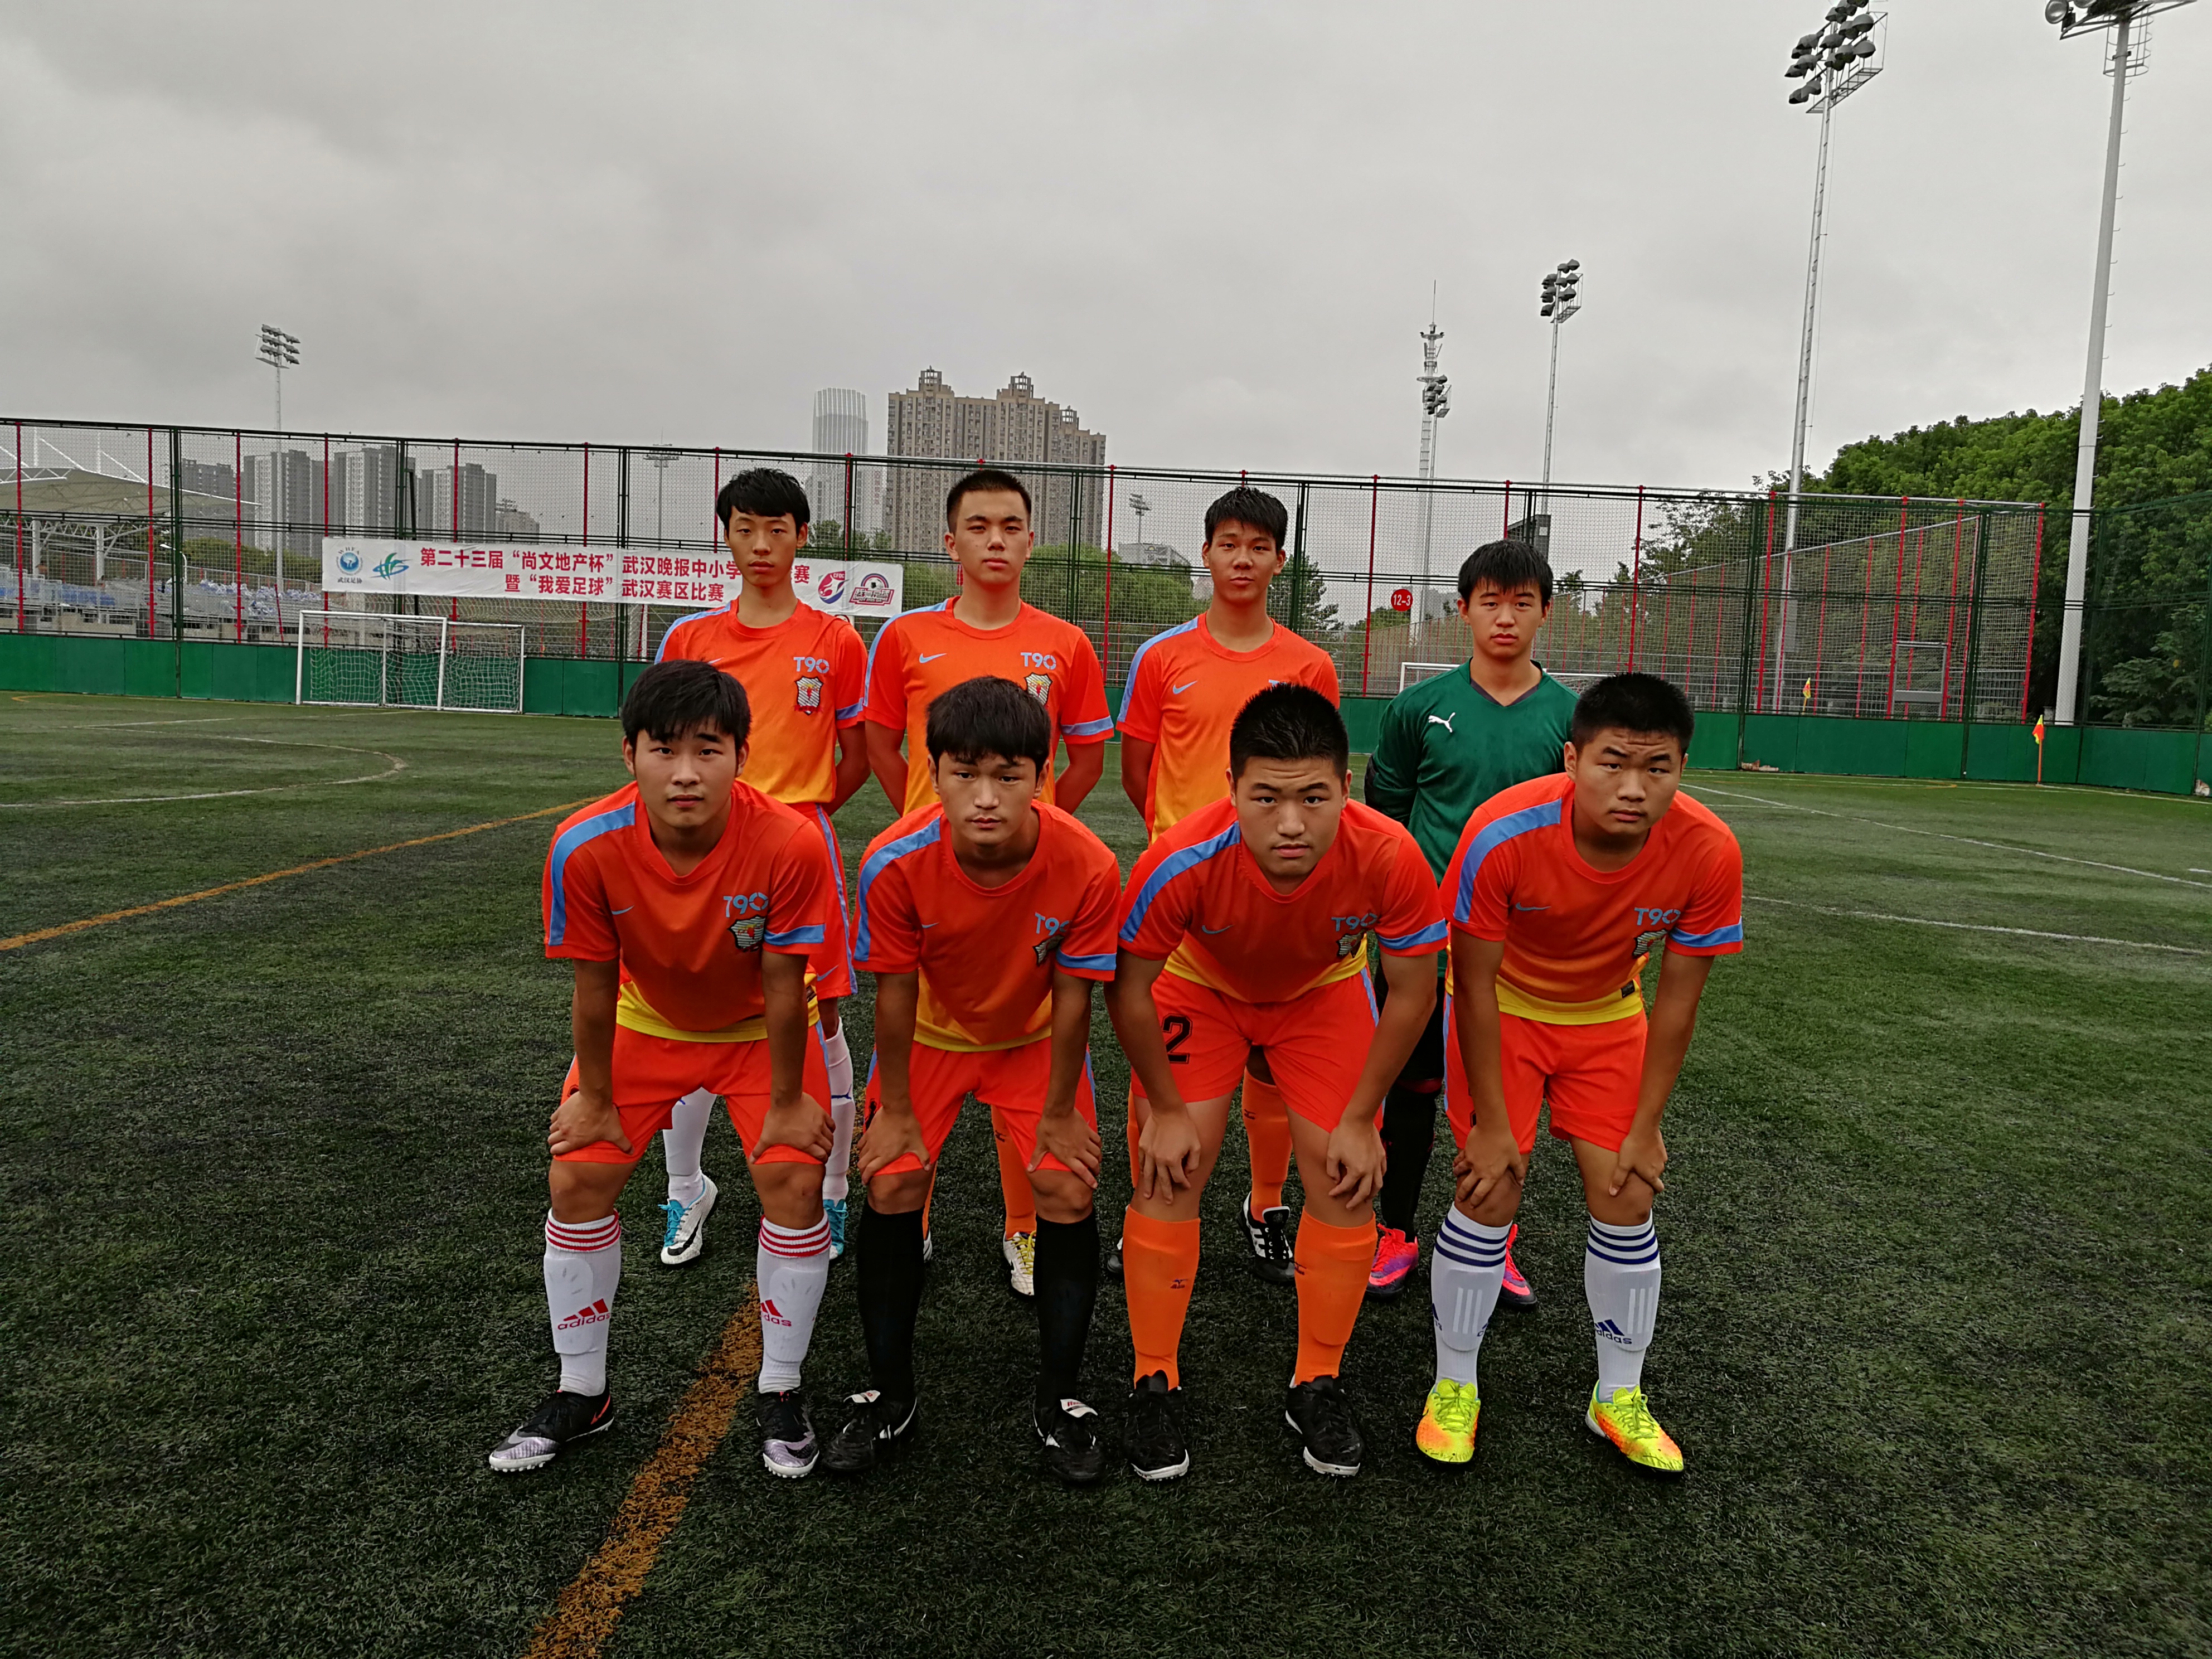 中学组织学生看世界杯(武汉中学生将担任世界杯护旗手 小哥哥成绩球技“双一流”)